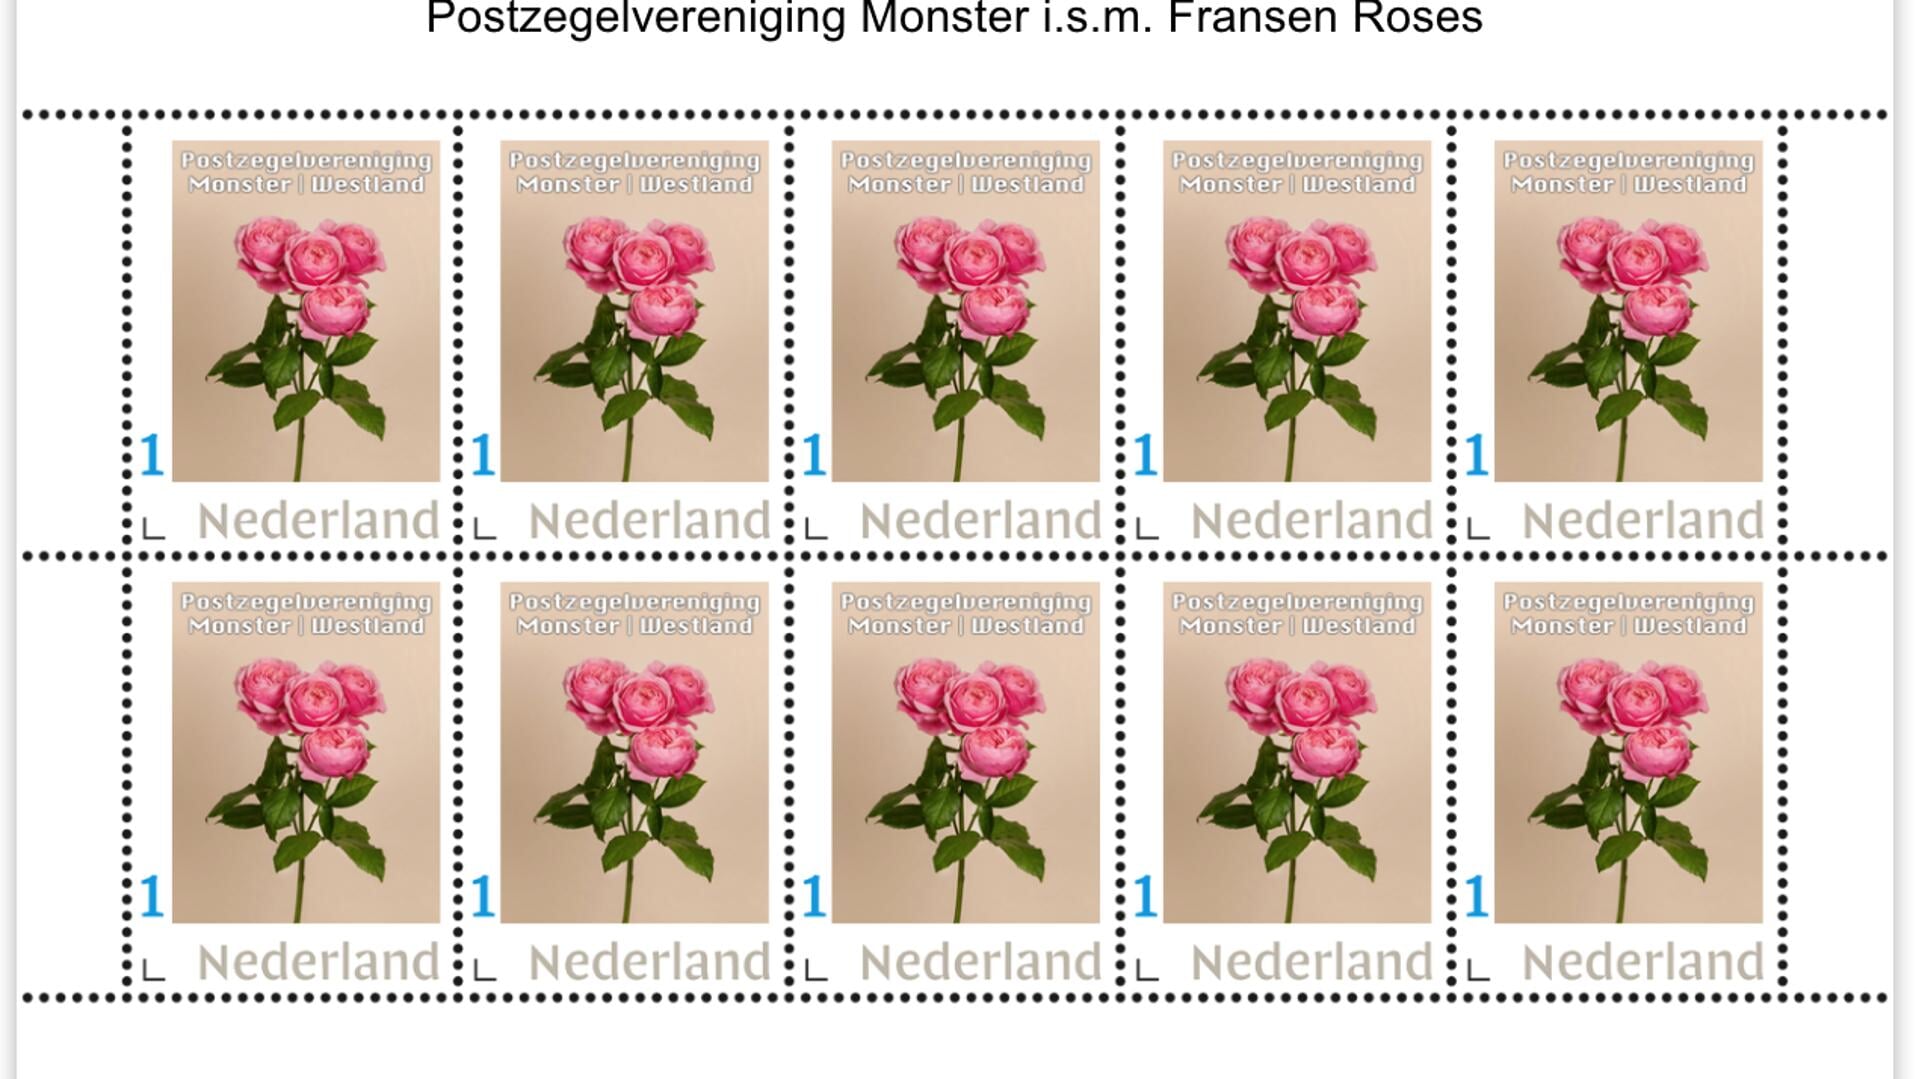  De jongste roos in de serie Westlands Mooiste postzegels, de trosroos Silva Pink.